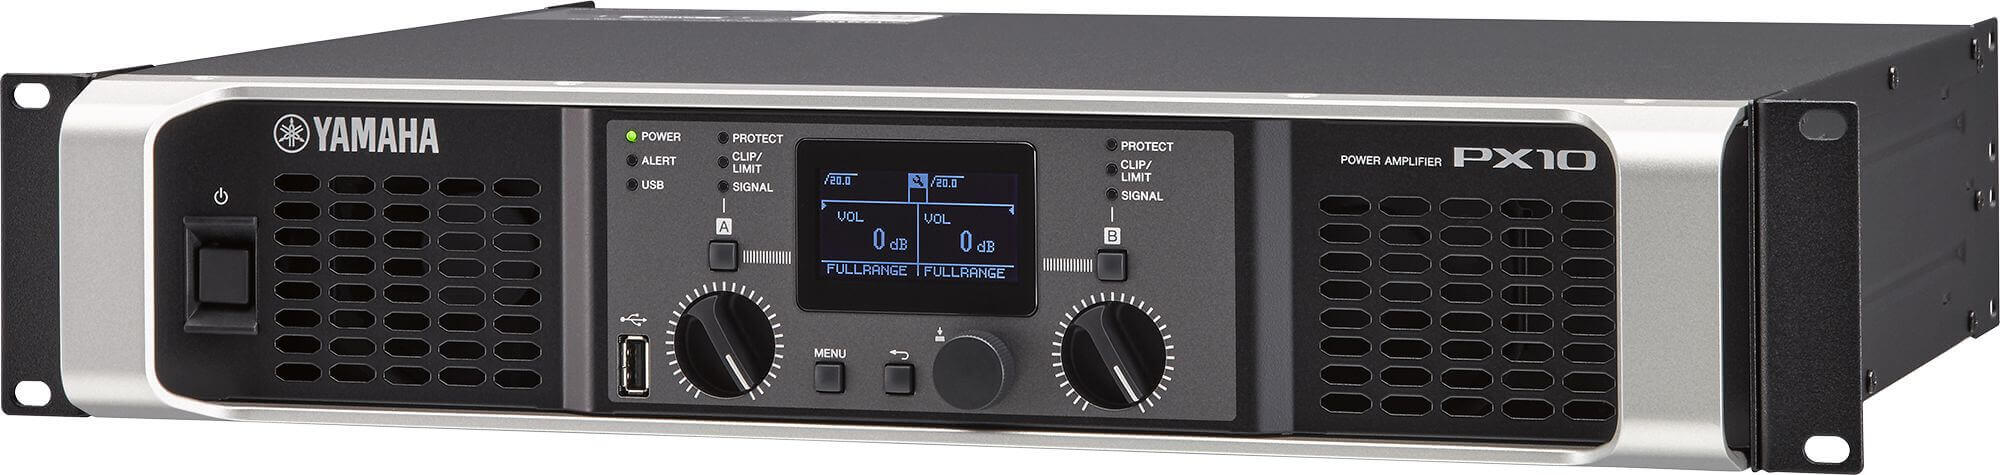 Yamaha px10 amplificador de poder de 2 canales y 1000 watts por canal a 8 ohms